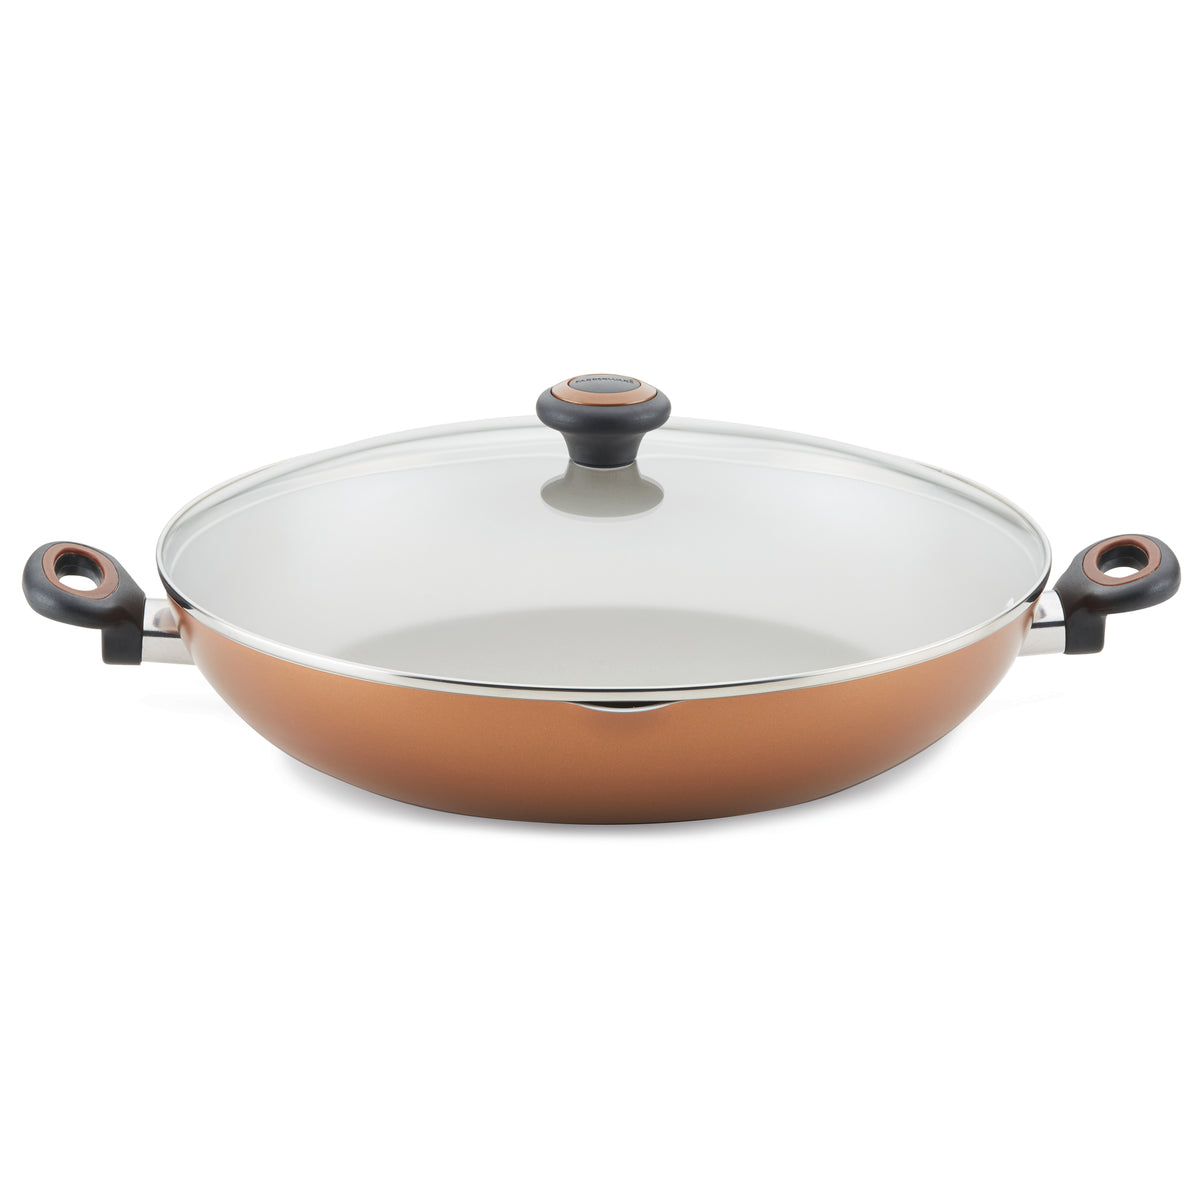 Farberware Pot/Pan Help : r/Frugal